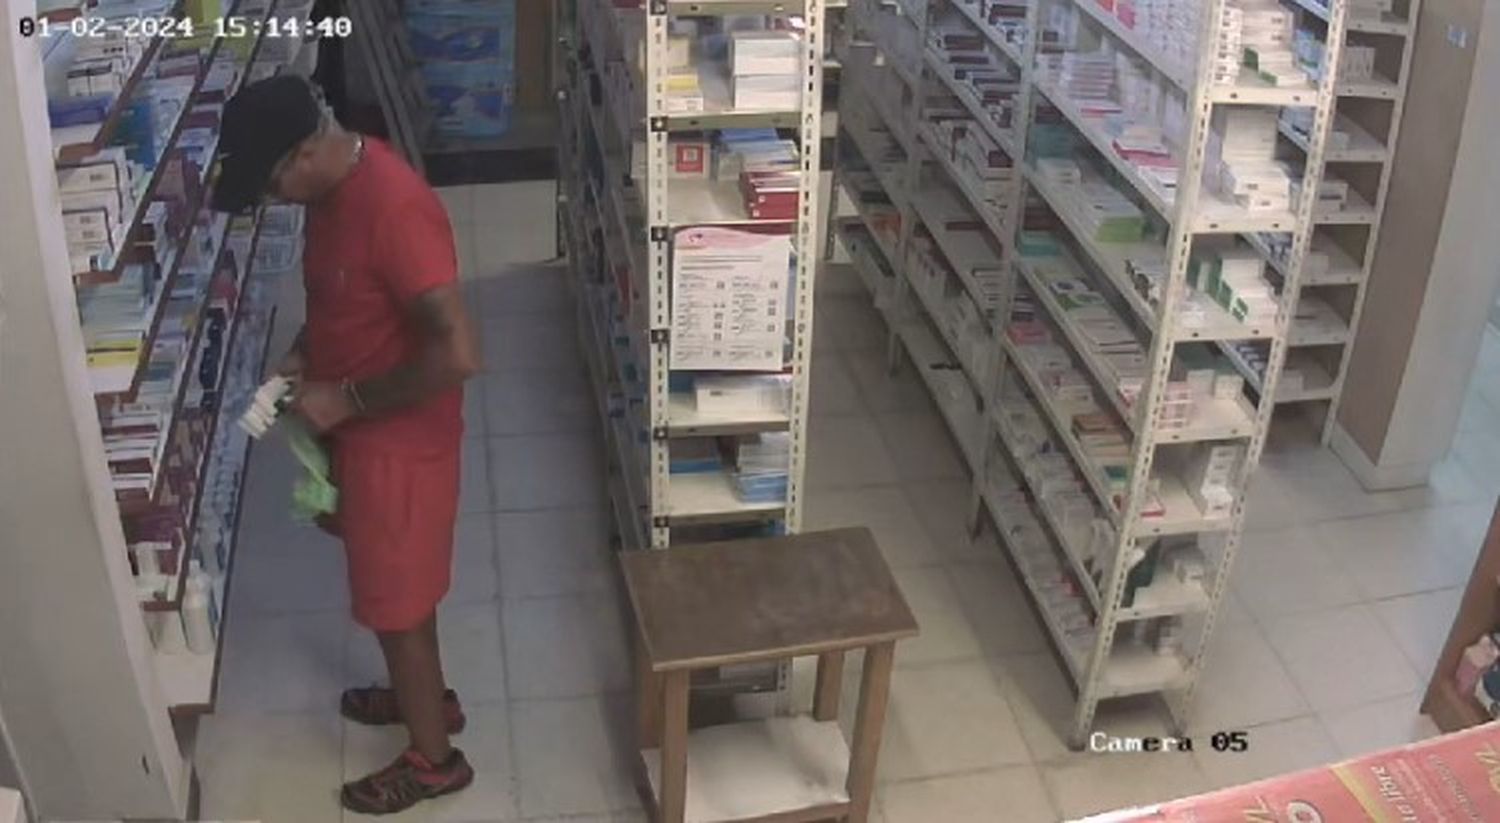 Un sujeto robó medicamentos de una farmacia de AMEMT.